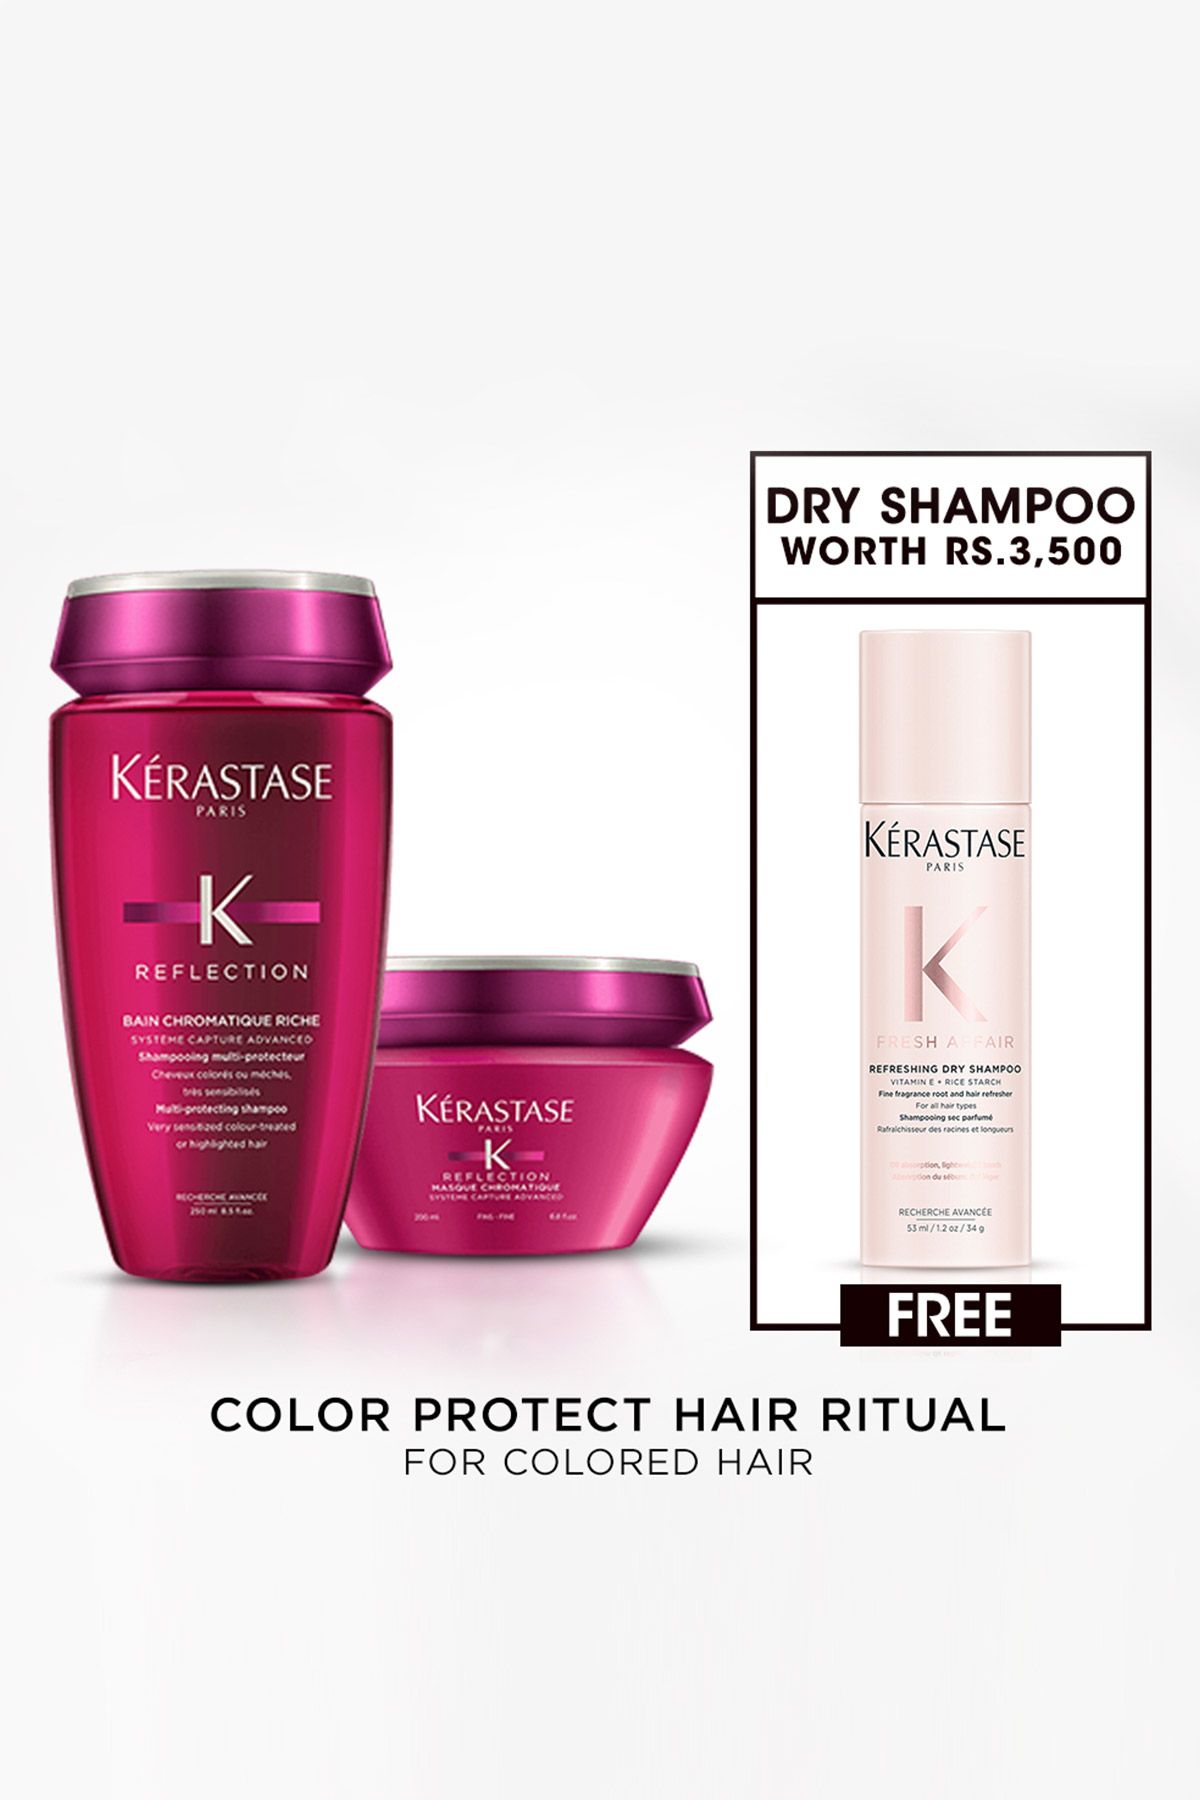 Color Care - Shampoo & Mask with Free Dry Shampoo